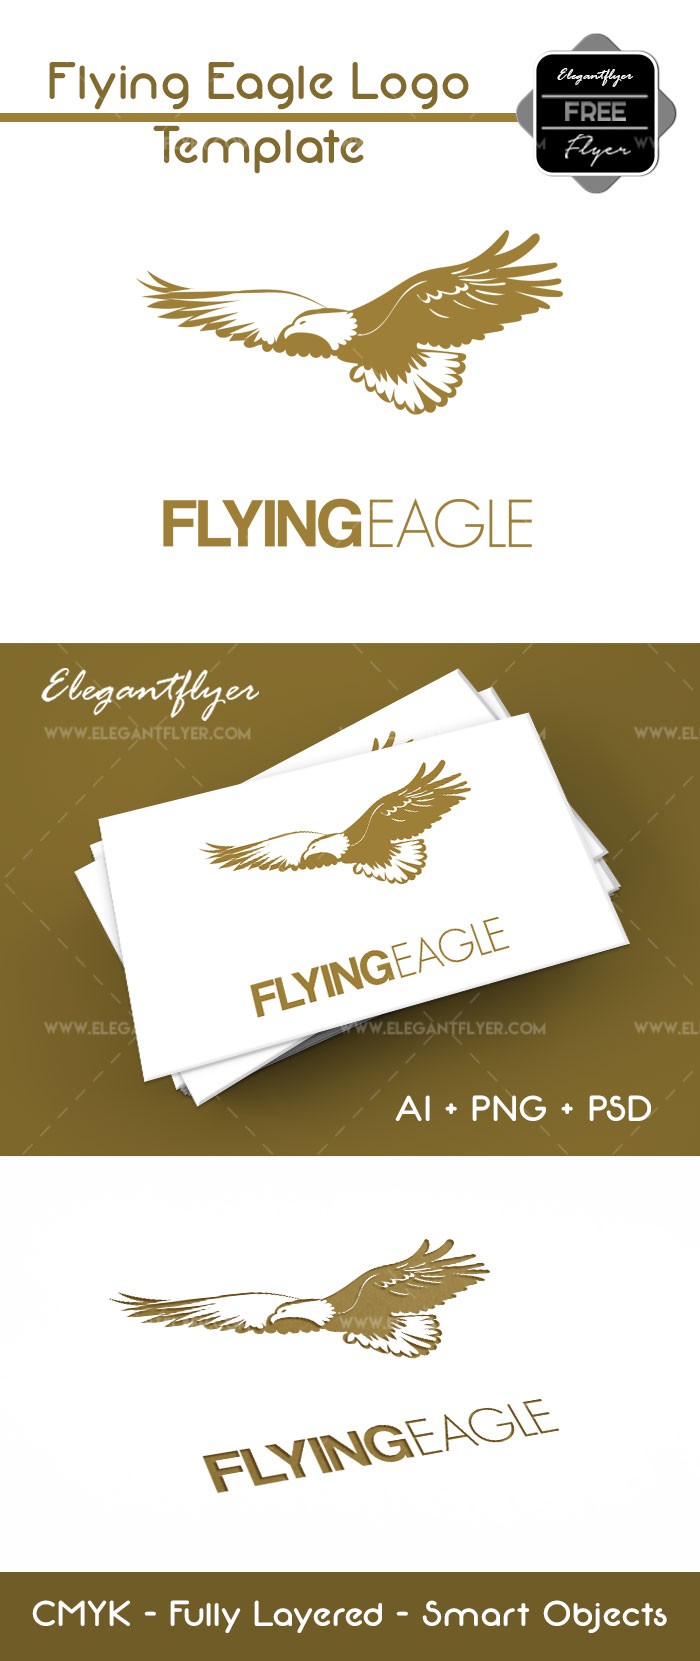 Águia Voadora by ElegantFlyer